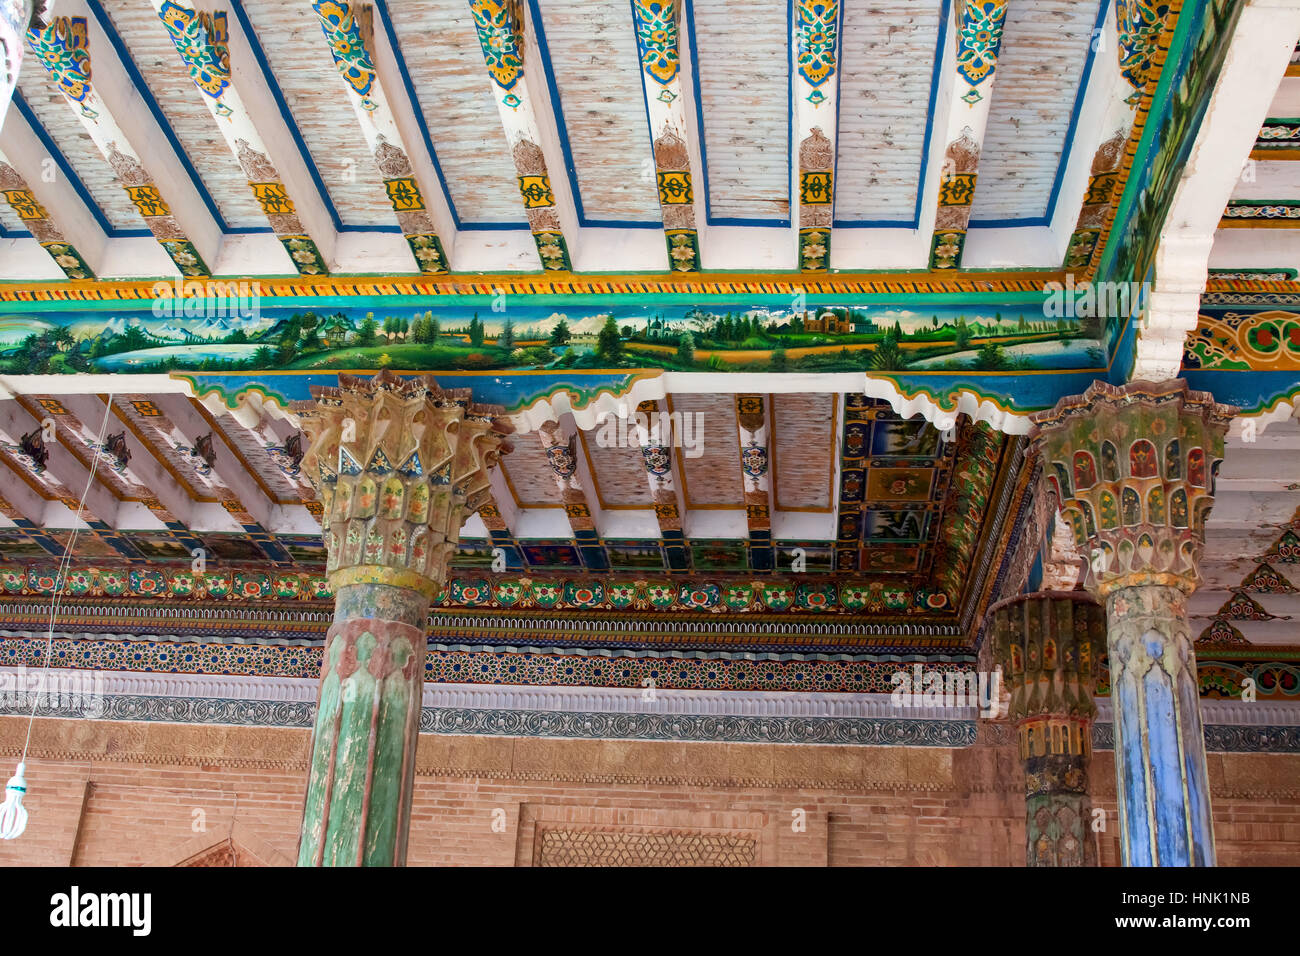 Paysage peint de la tombe d'Apak Hoja, Kashgar, région autonome du Xinjiang, Chine. Banque D'Images